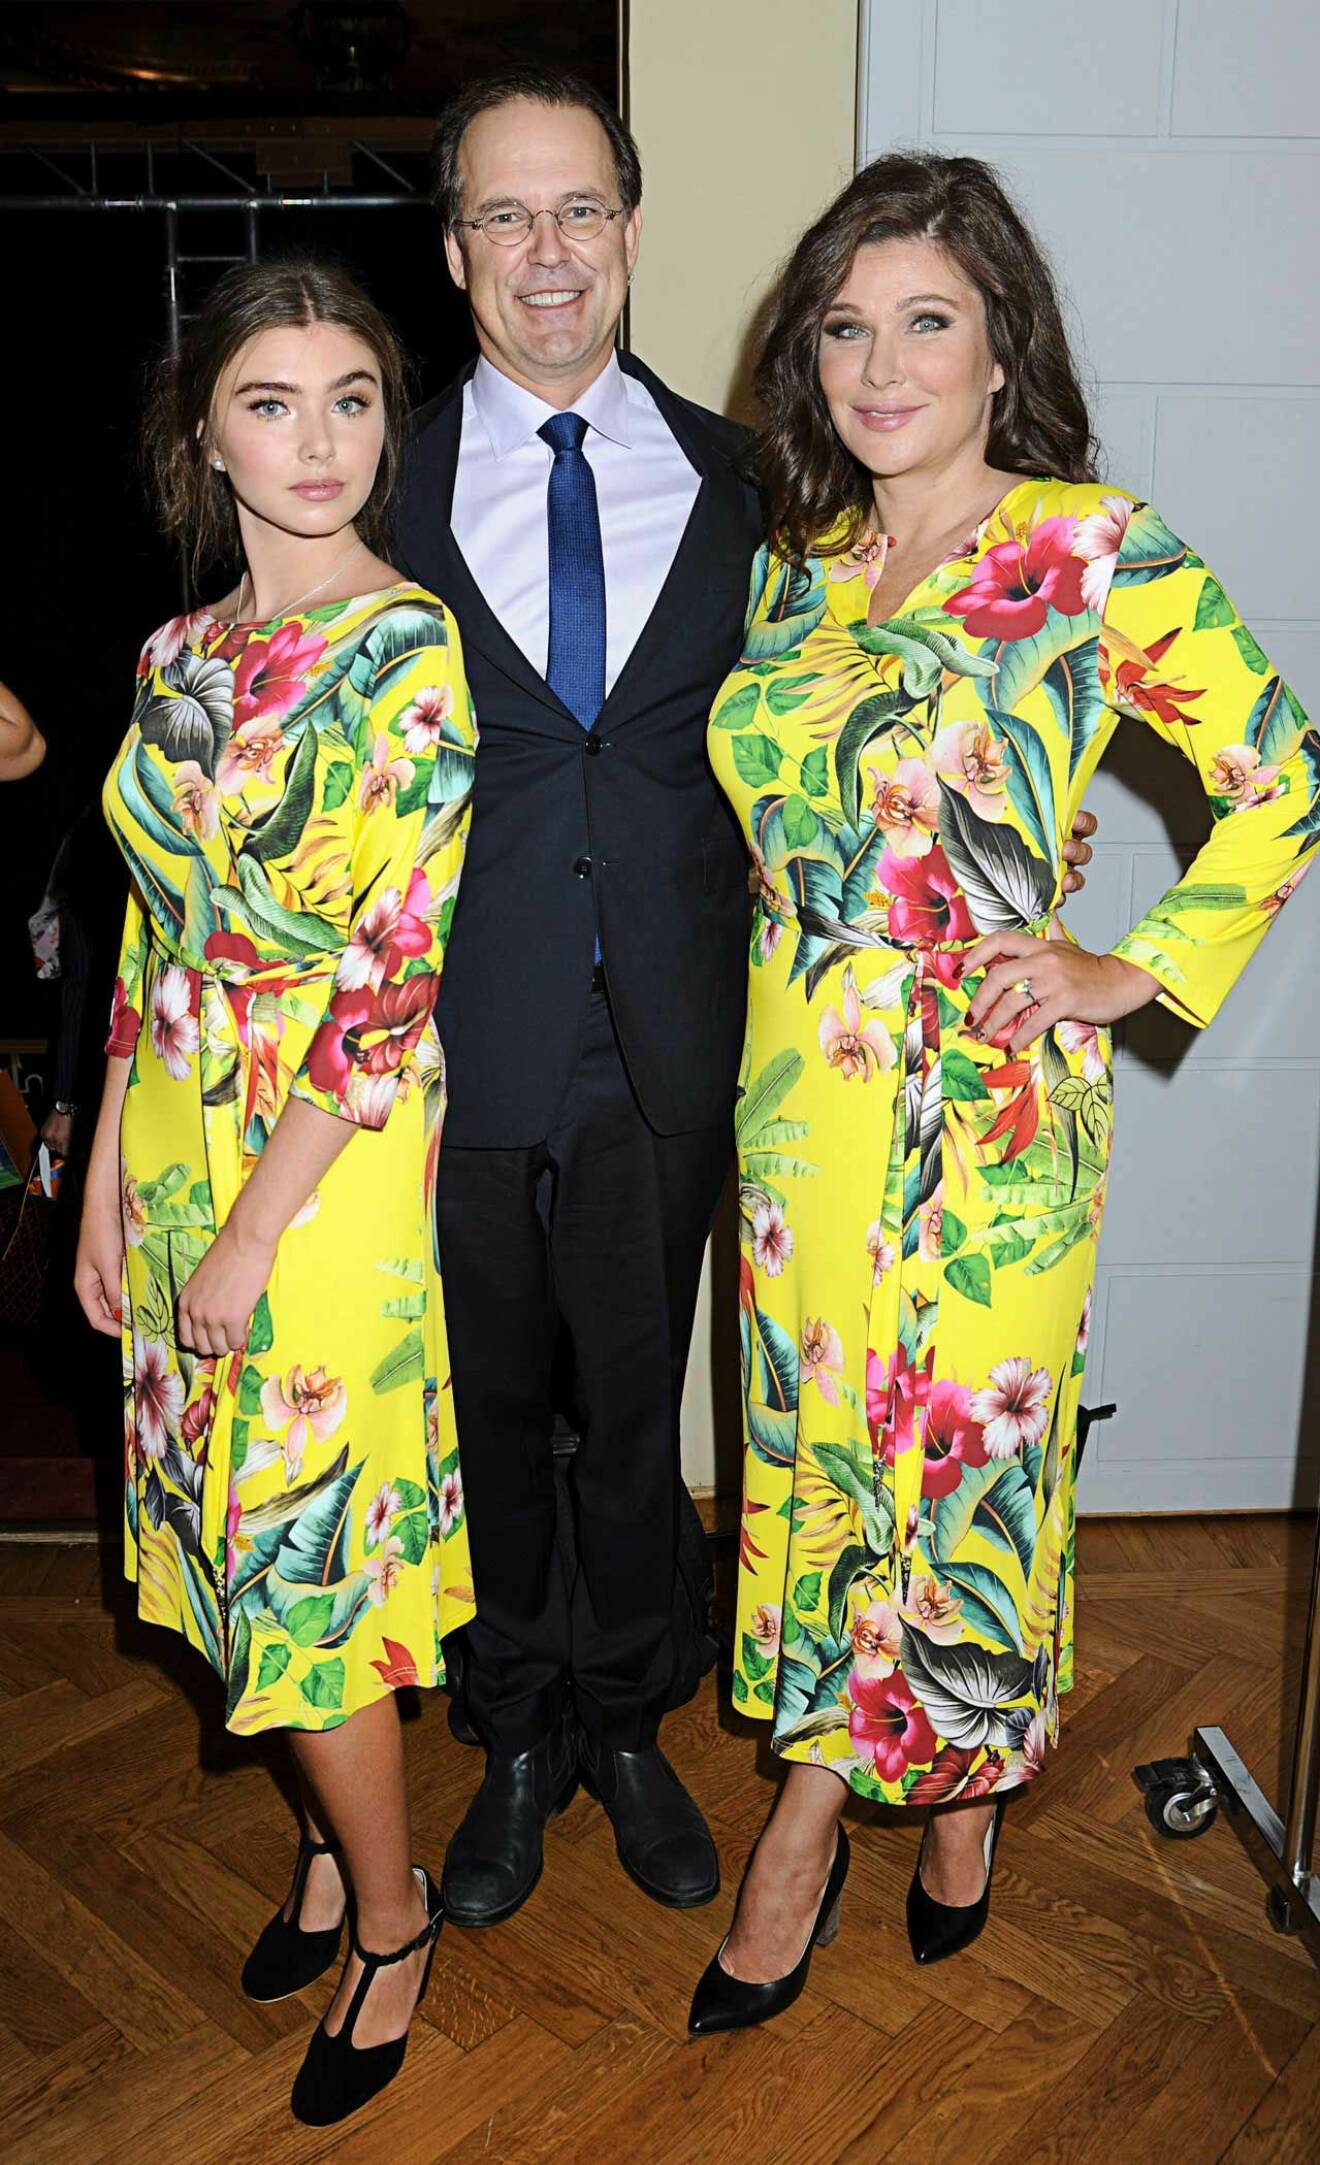 Stolt som en tupp! Anders Borg med frun Dominika och bonusdottern Hannah Bahri, båda modeller.